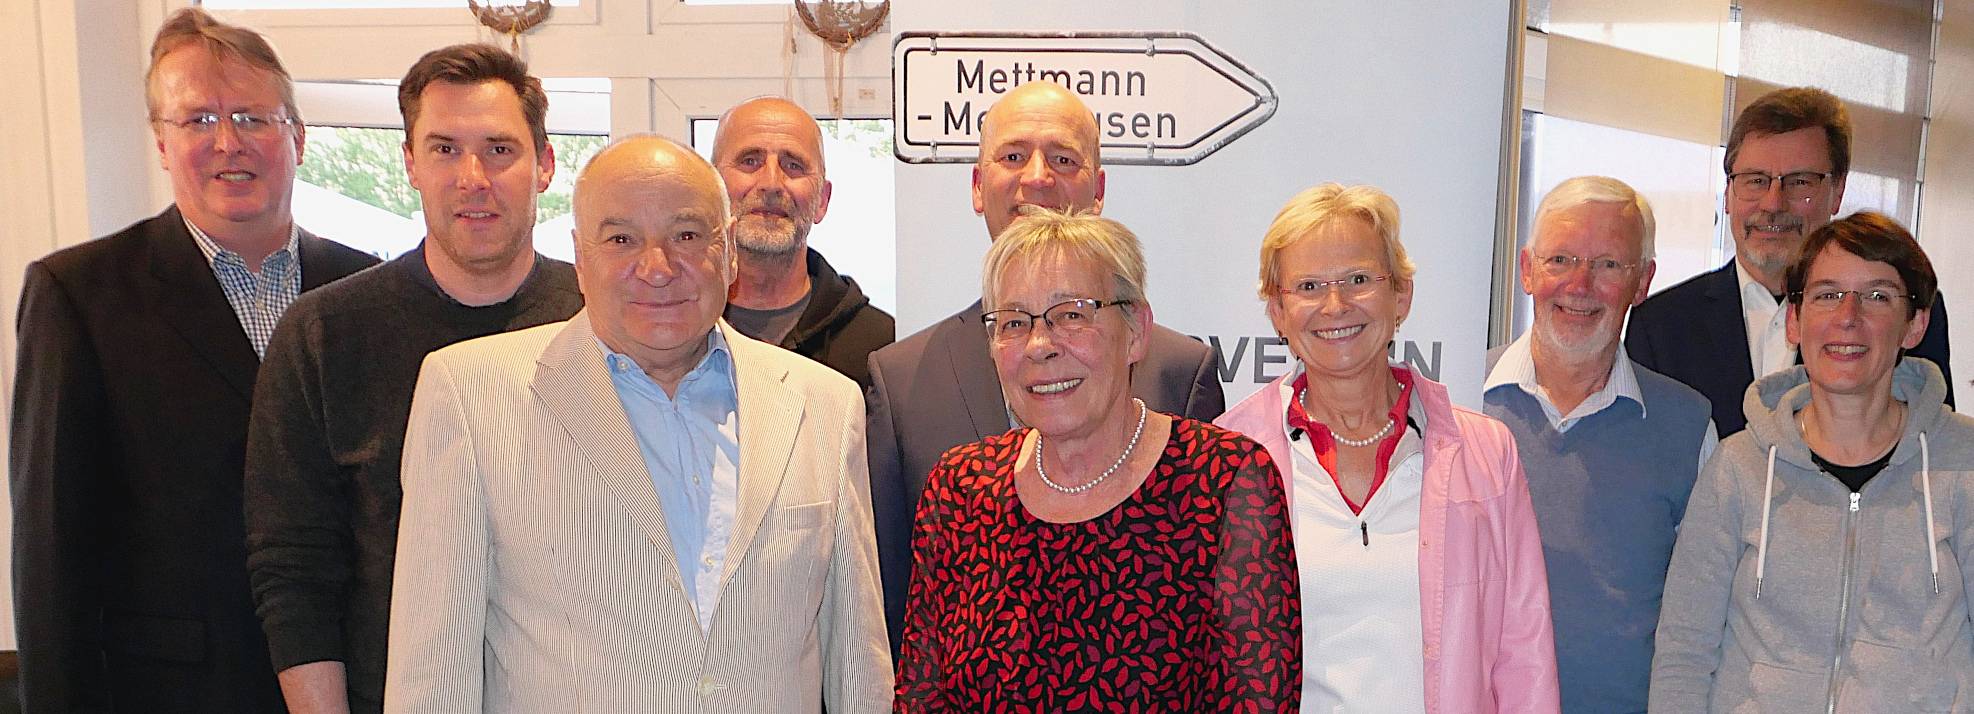 Bürgerverein Metzkausen: Gregor Neumann wiedergewählt